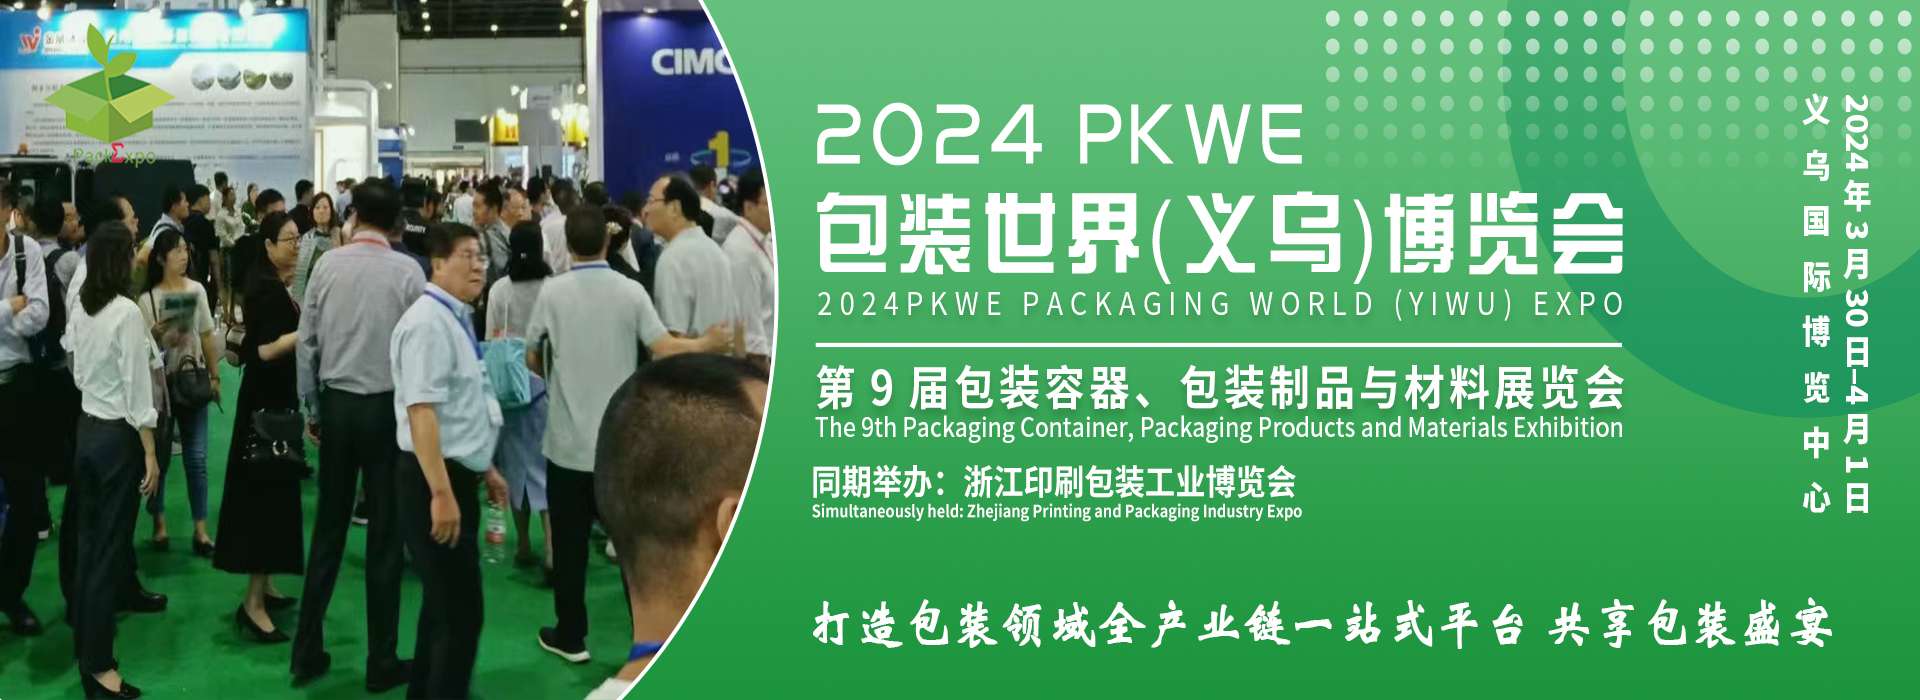 2024PKWE 包装世界(义乌)博览会